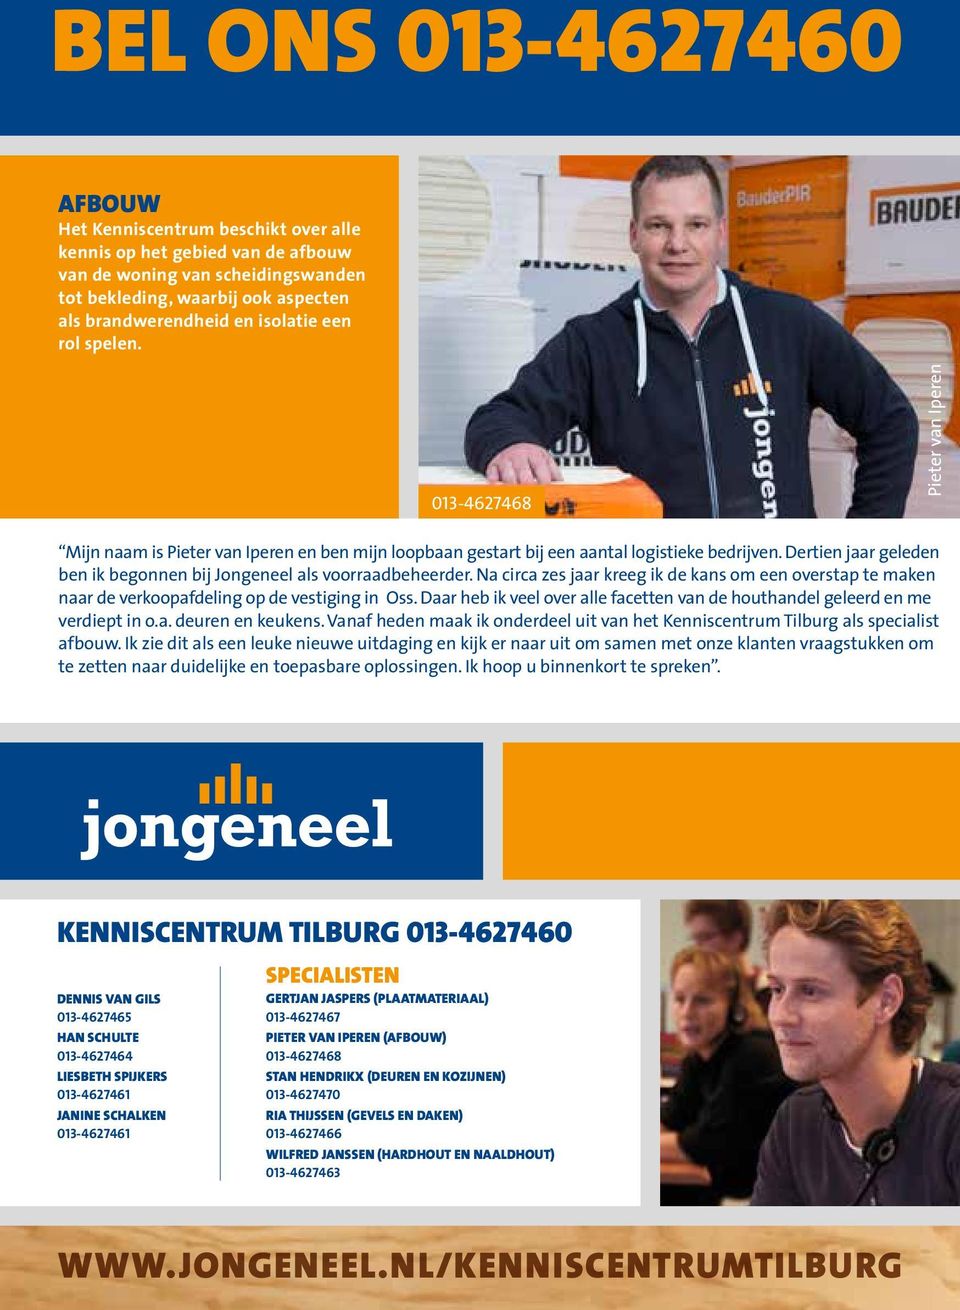 Dertien jaar geleden ben ik begonnen bij Jongeneel als voorraadbeheerder. Na circa zes jaar kreeg ik de kans om een overstap te maken naar de verkoopafdeling op de vestiging in Oss.